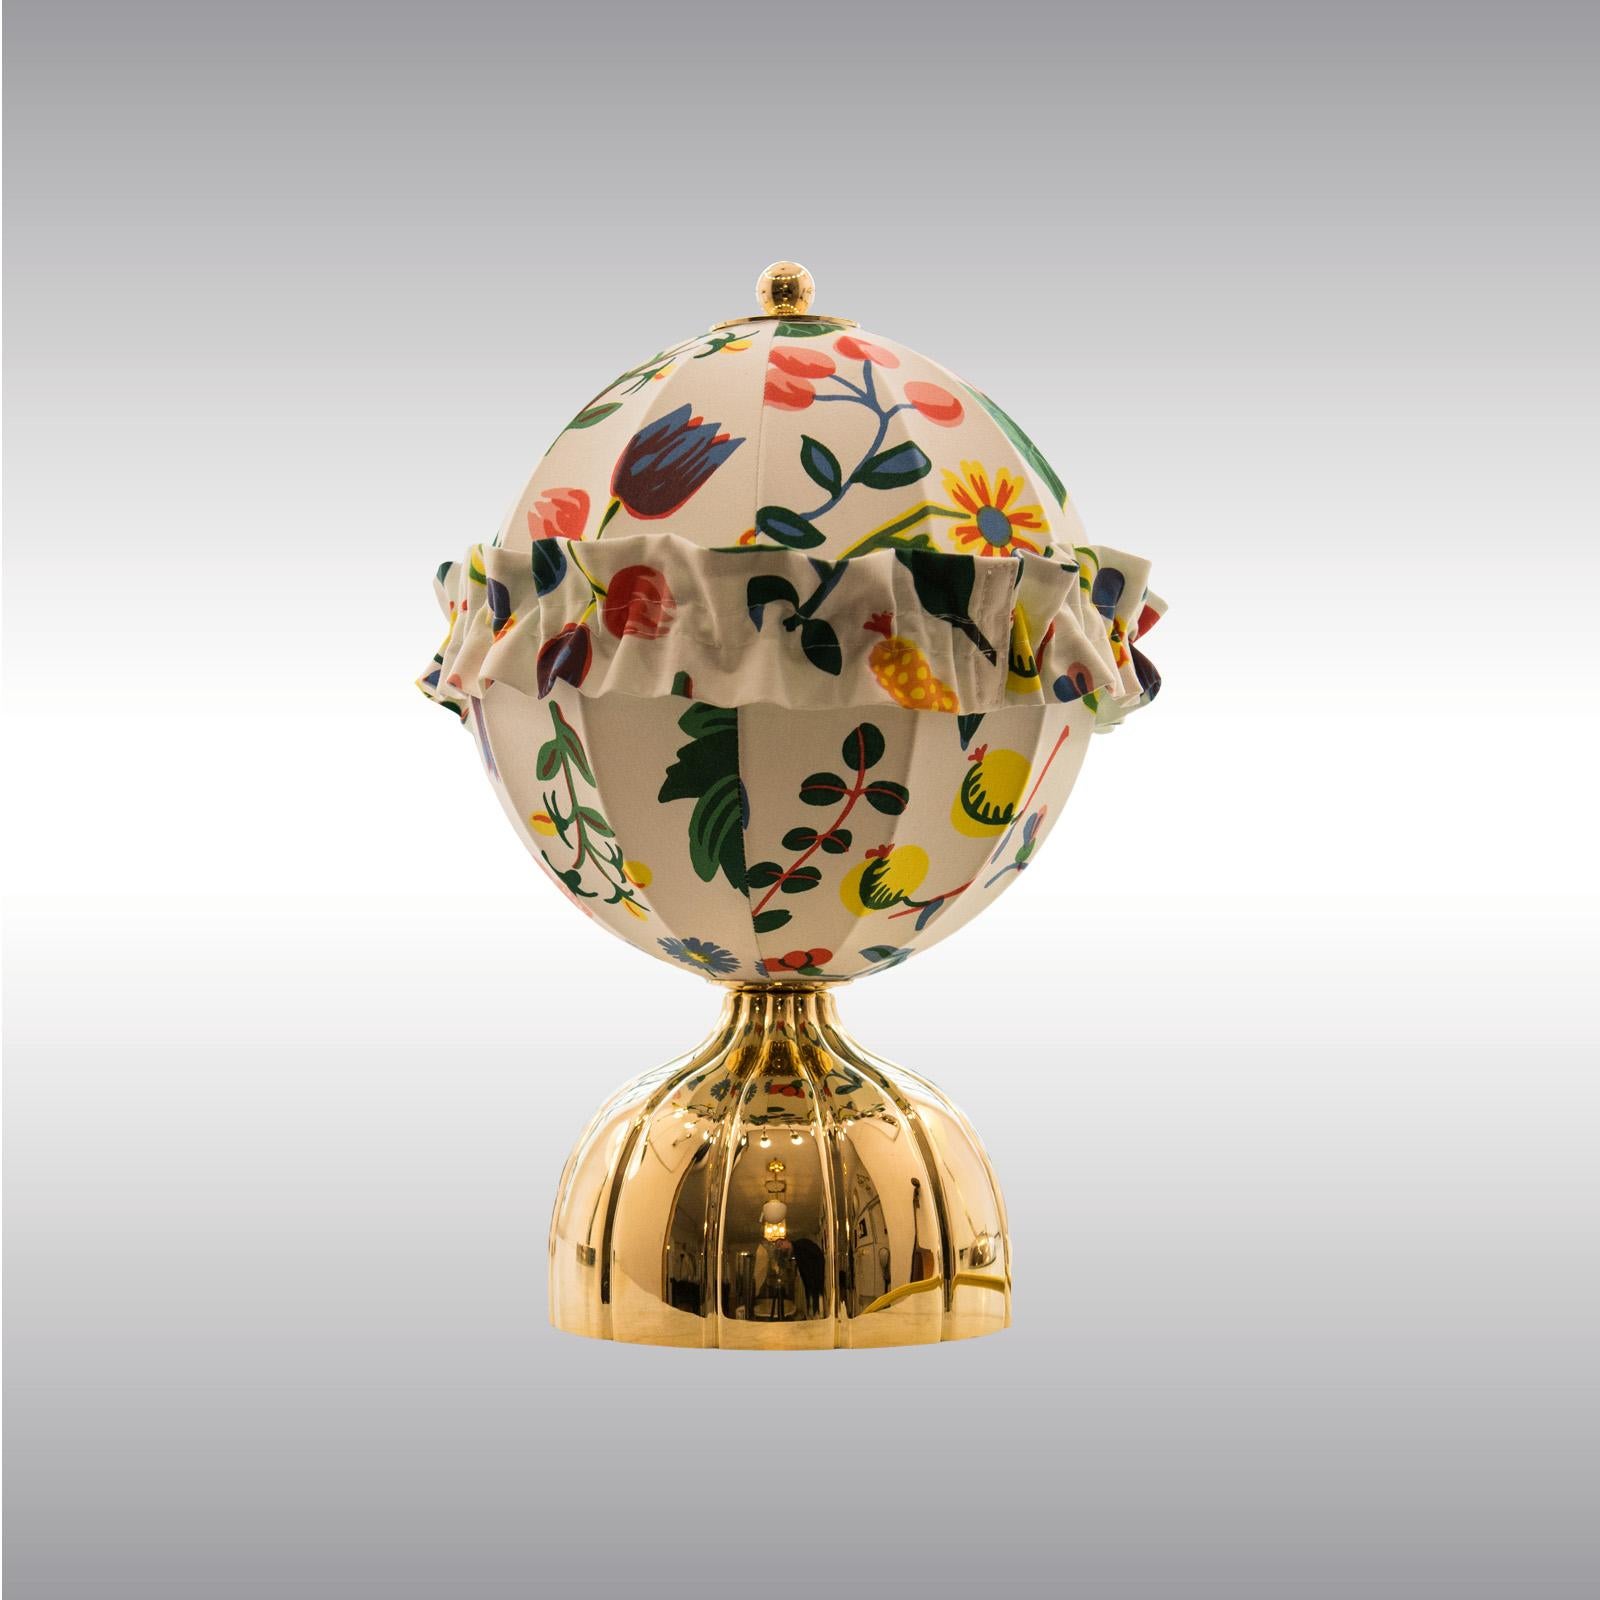 Jugendstil Josef Hoffmann & Josef Frank & Wiener Werkstaette Ball Table Lamp, Re-Edition For Sale